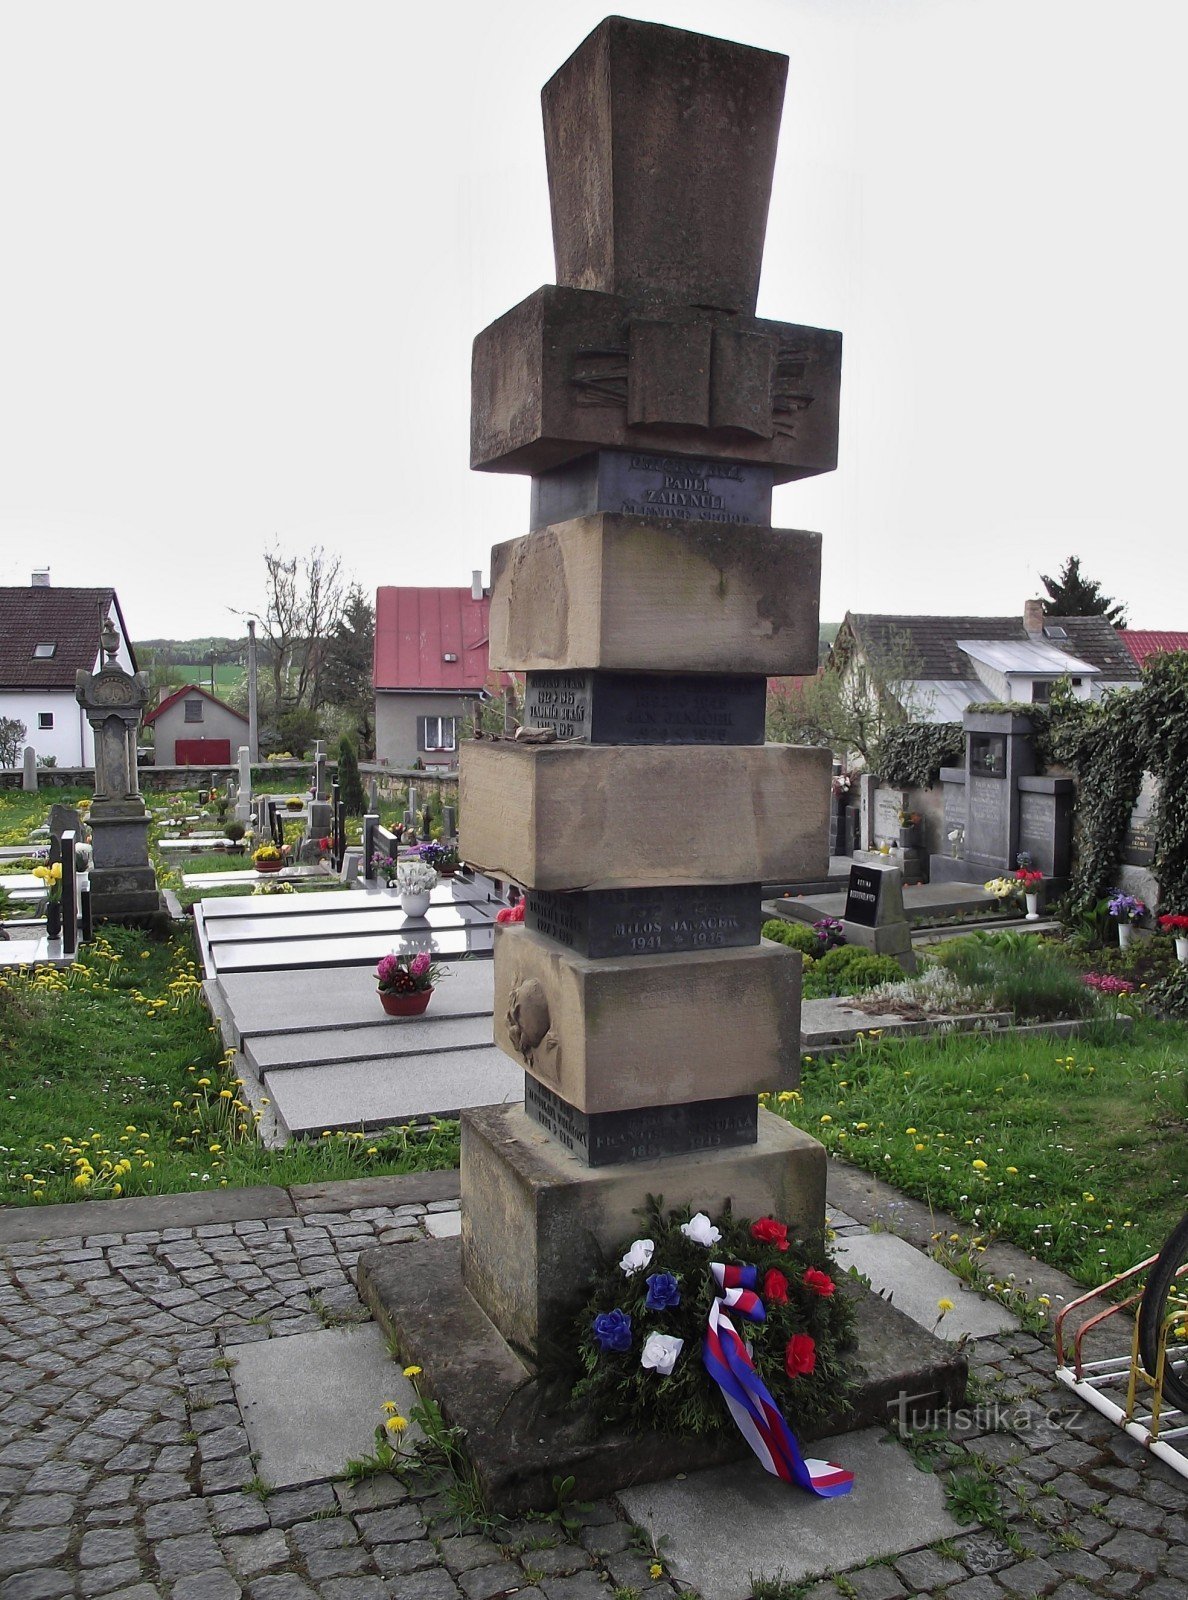 Makovsky monument